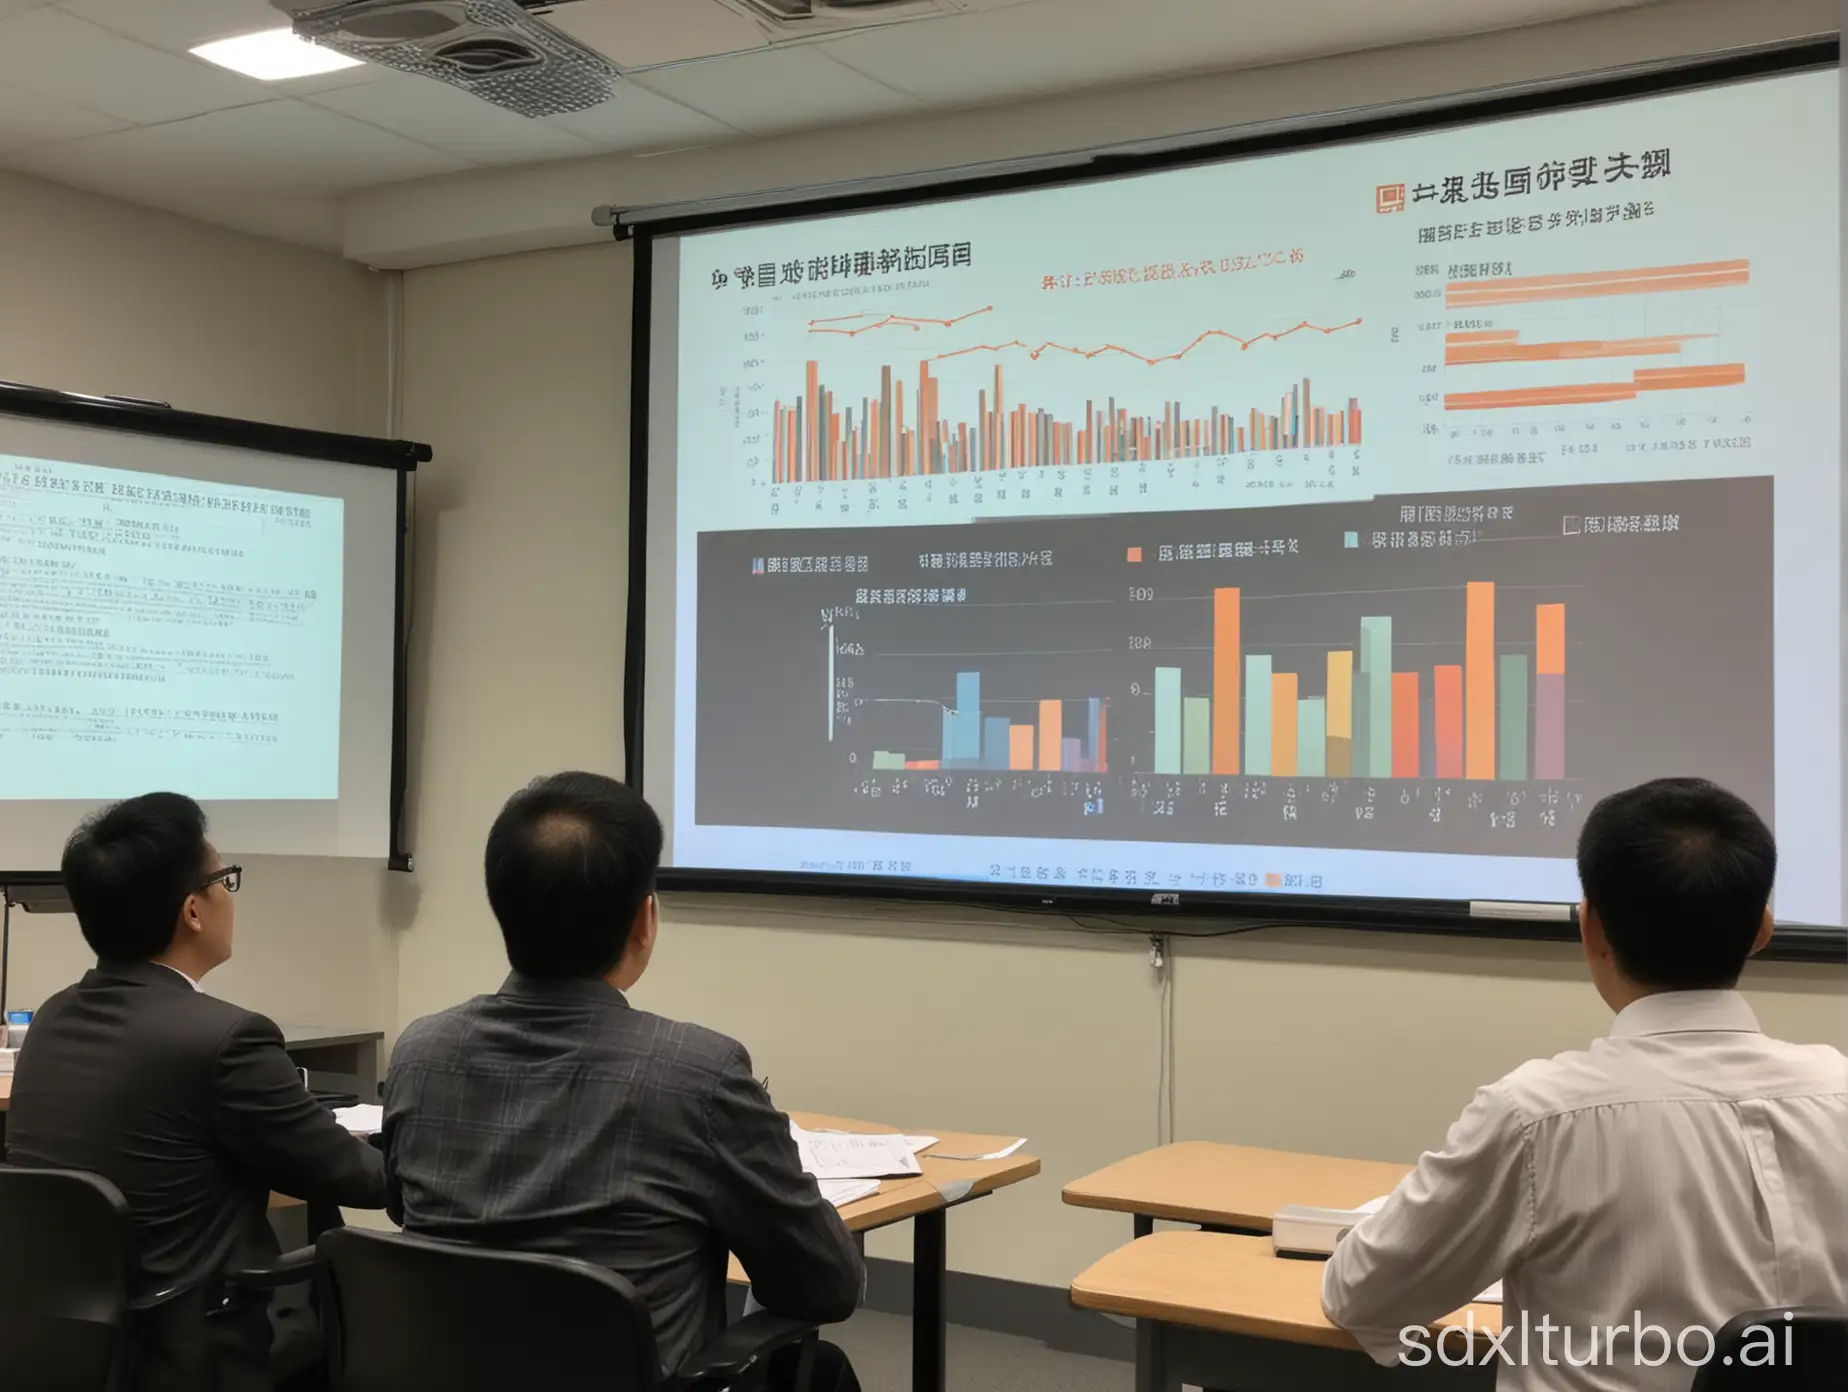 一个中国高级讲师在使用投影PPT进行数据方面的讲解 有柱状图折线图等，底下有一群企业管理人员在进行学习记录